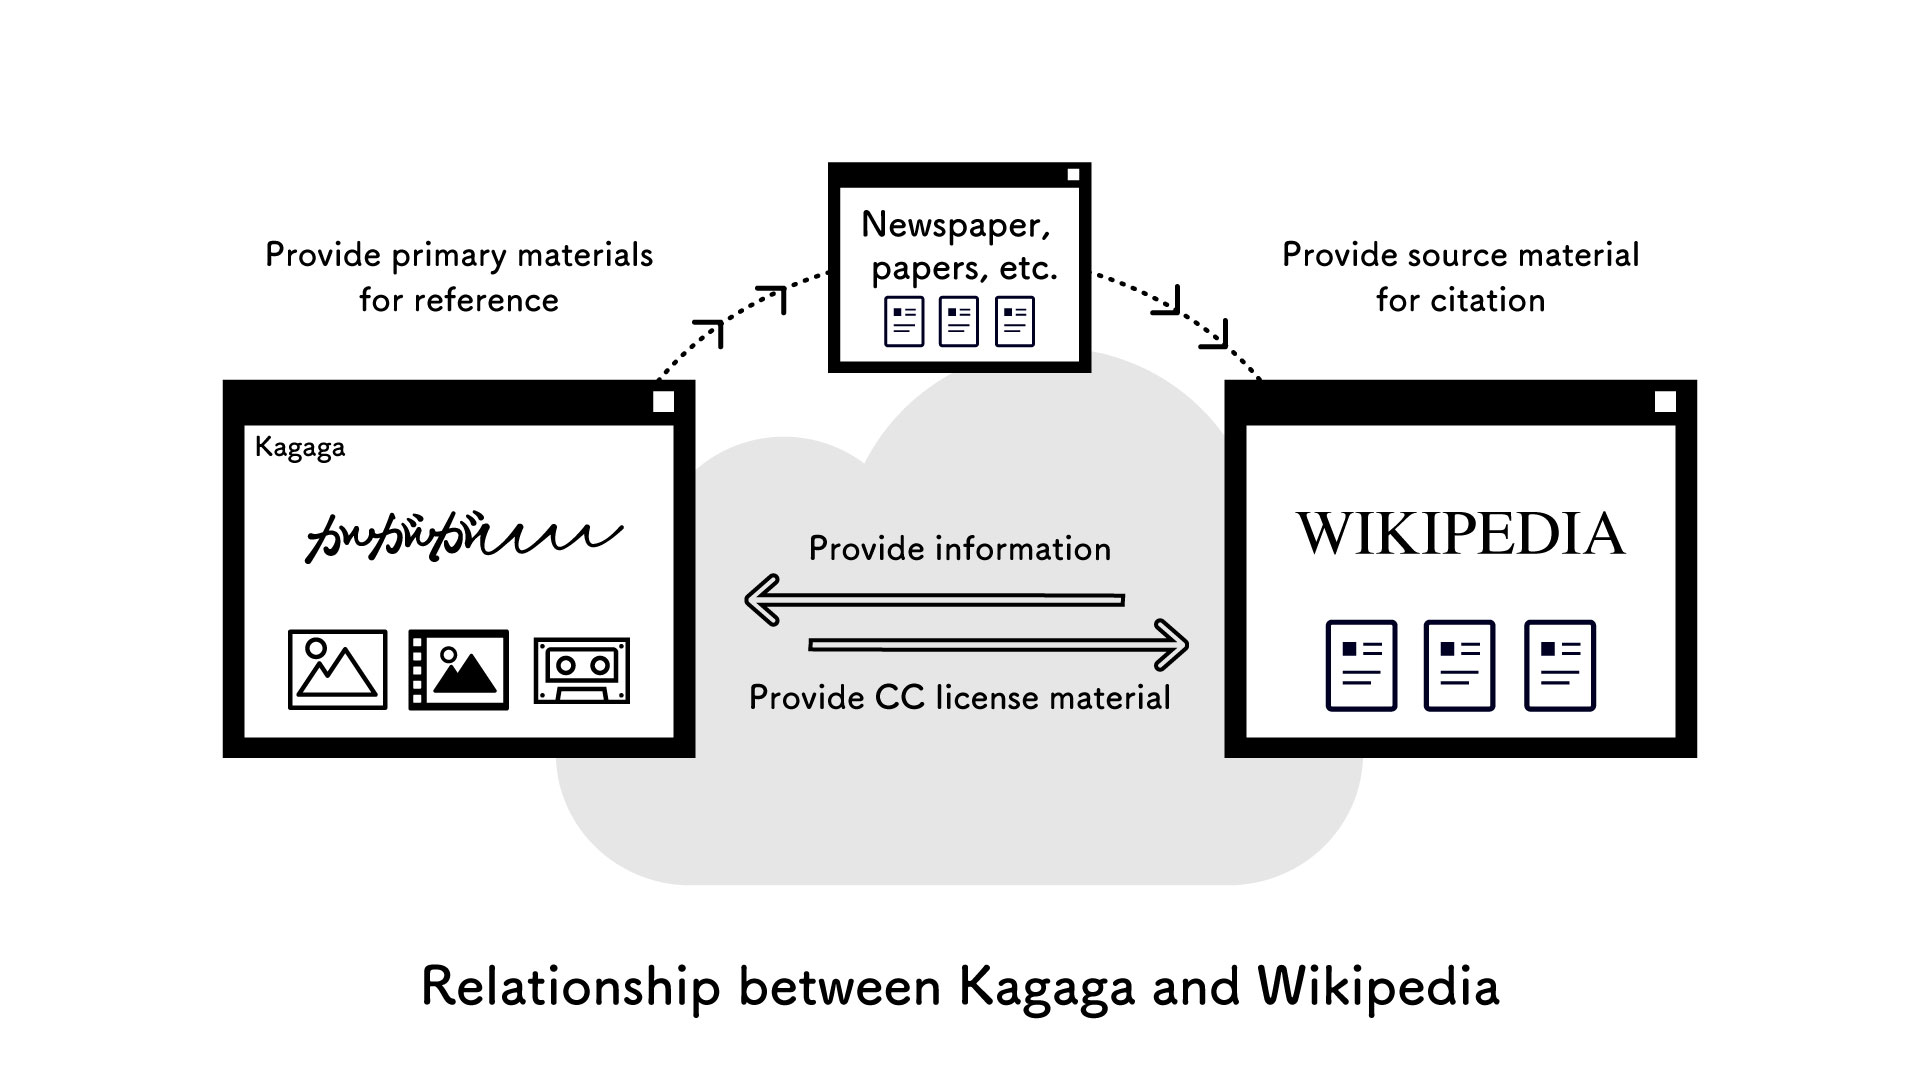 Relationship between Kagaga and Wikipedia